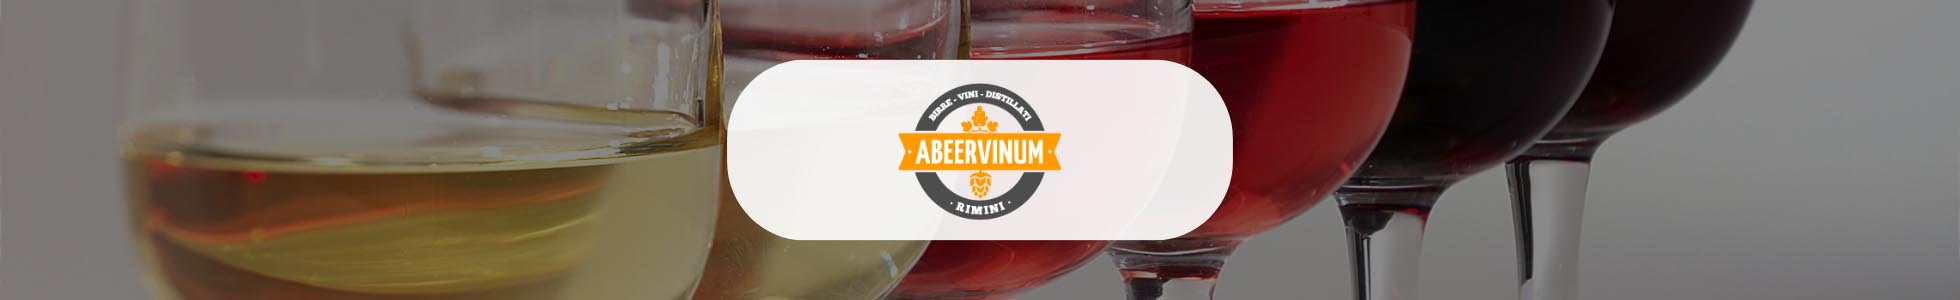 Abeervinum - Shop online vini